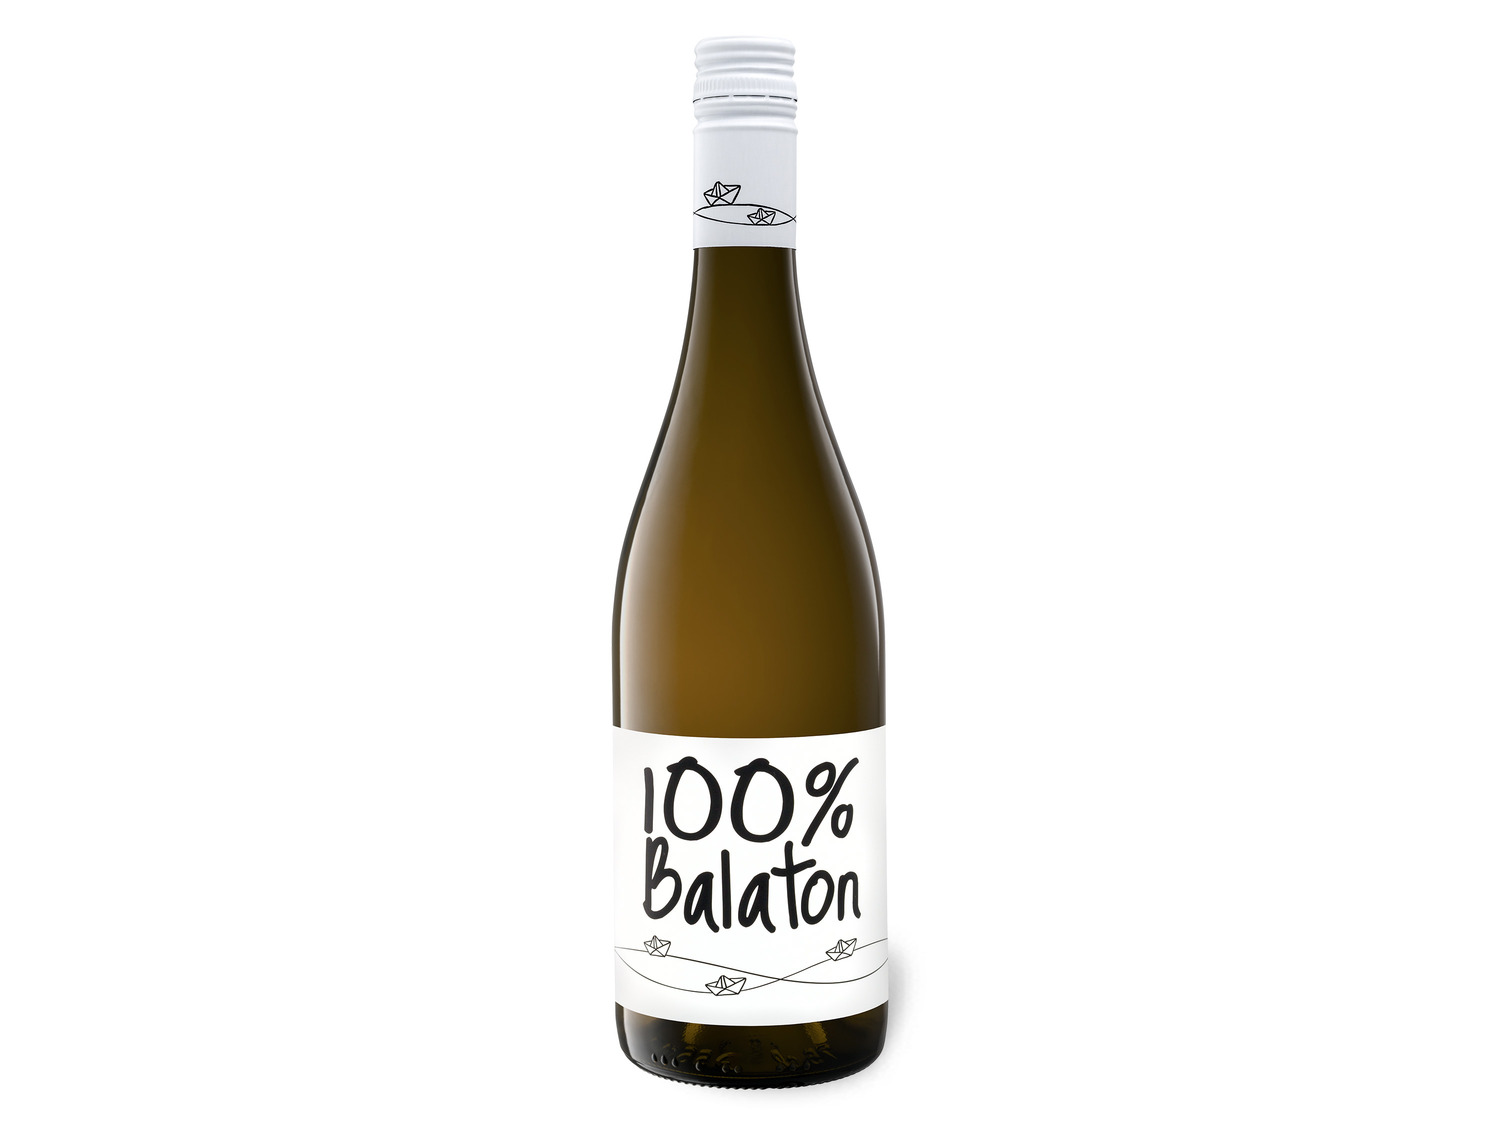 100% Cuvée LIDL Balaton trocken, Weißwein 2021 |